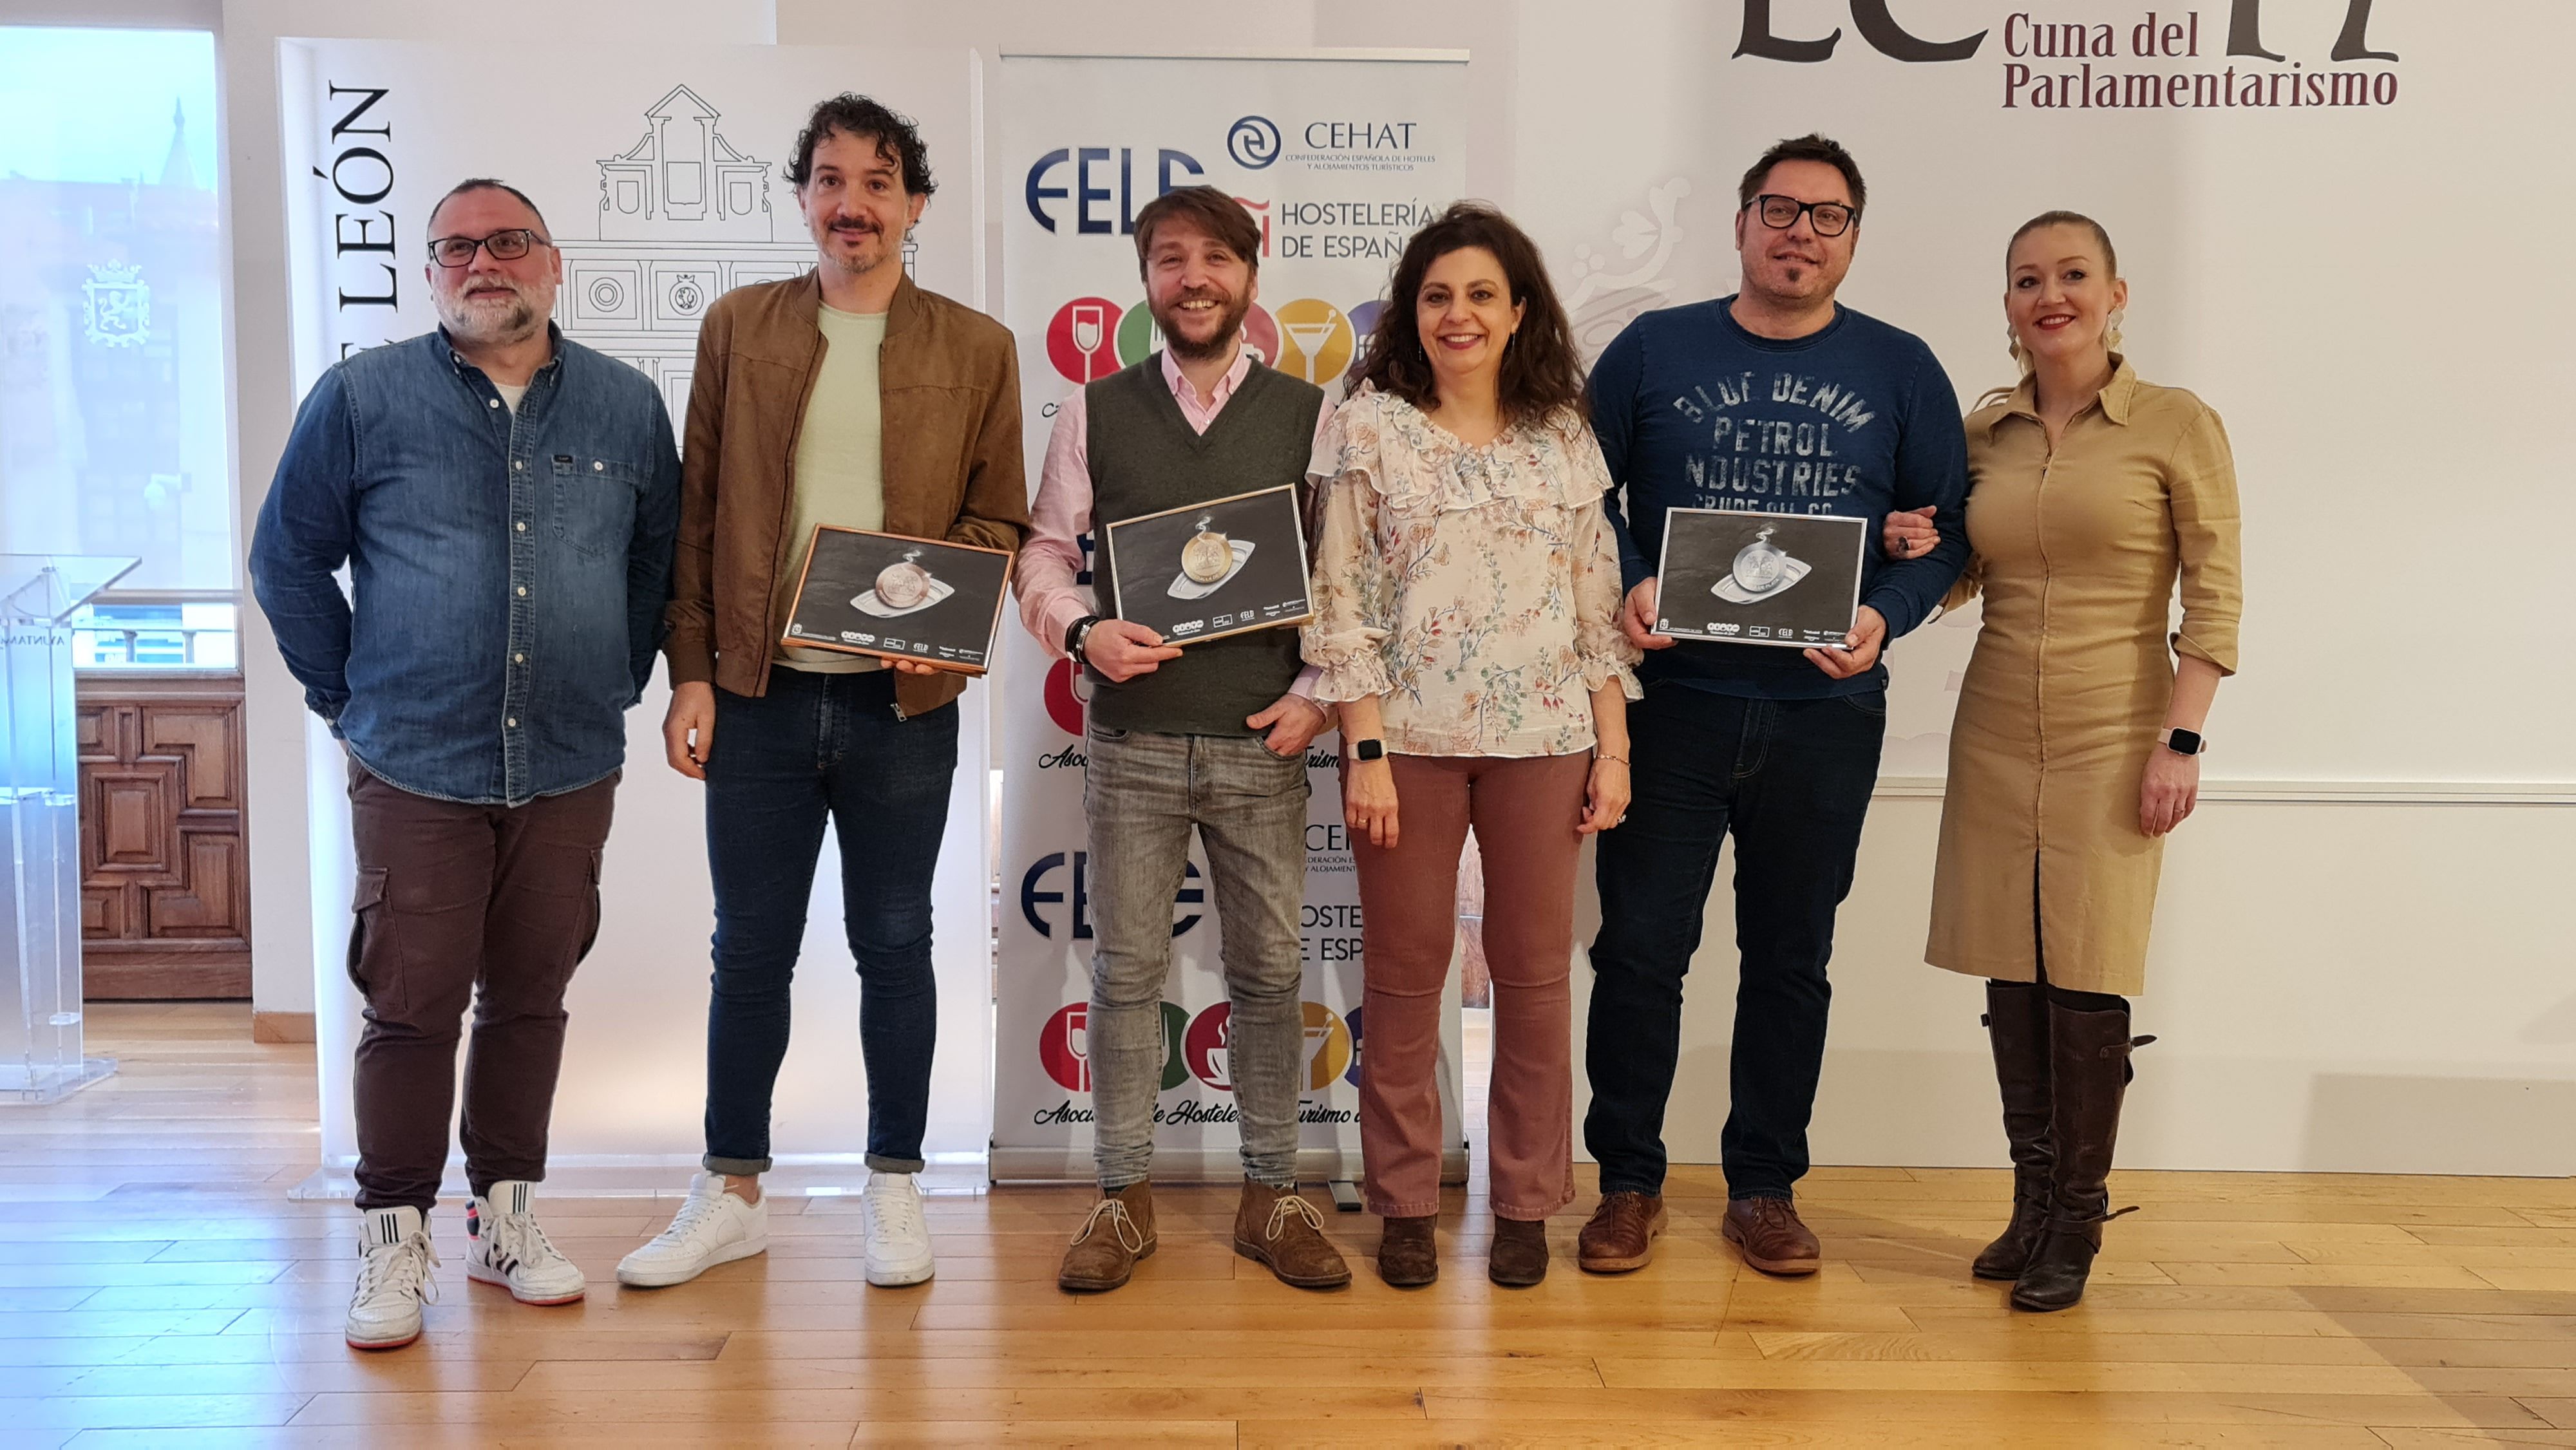 La entrega de premios ha tenido lugar en el Ayuntamiento de León. | L.N.C.